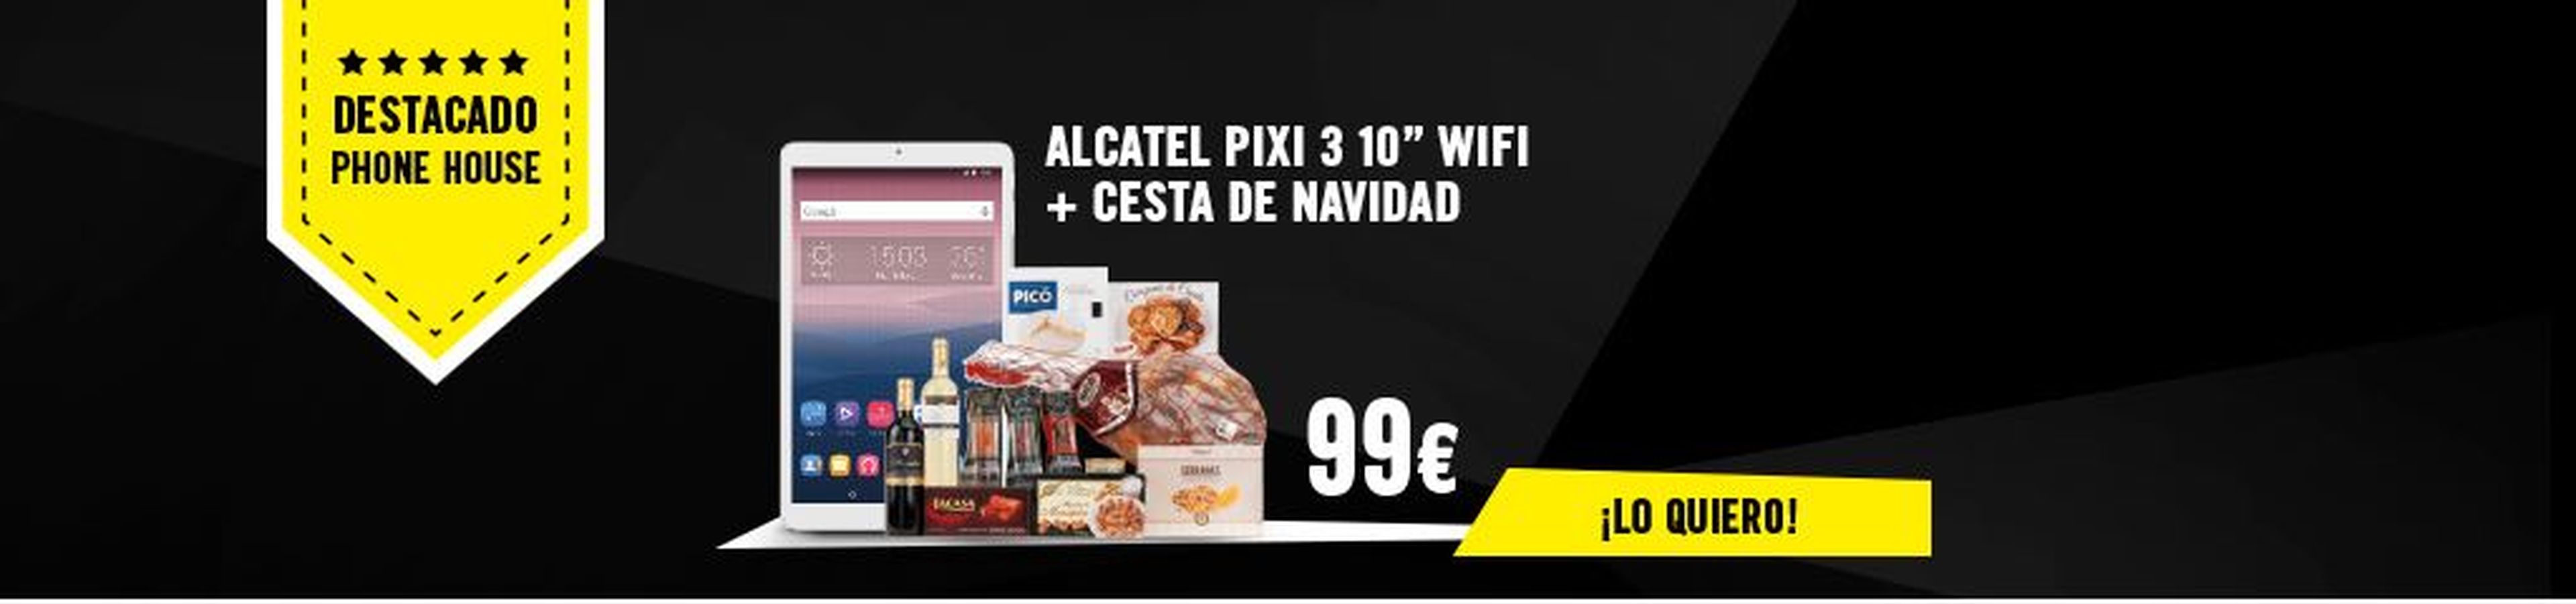 Alcatel Pixi 3